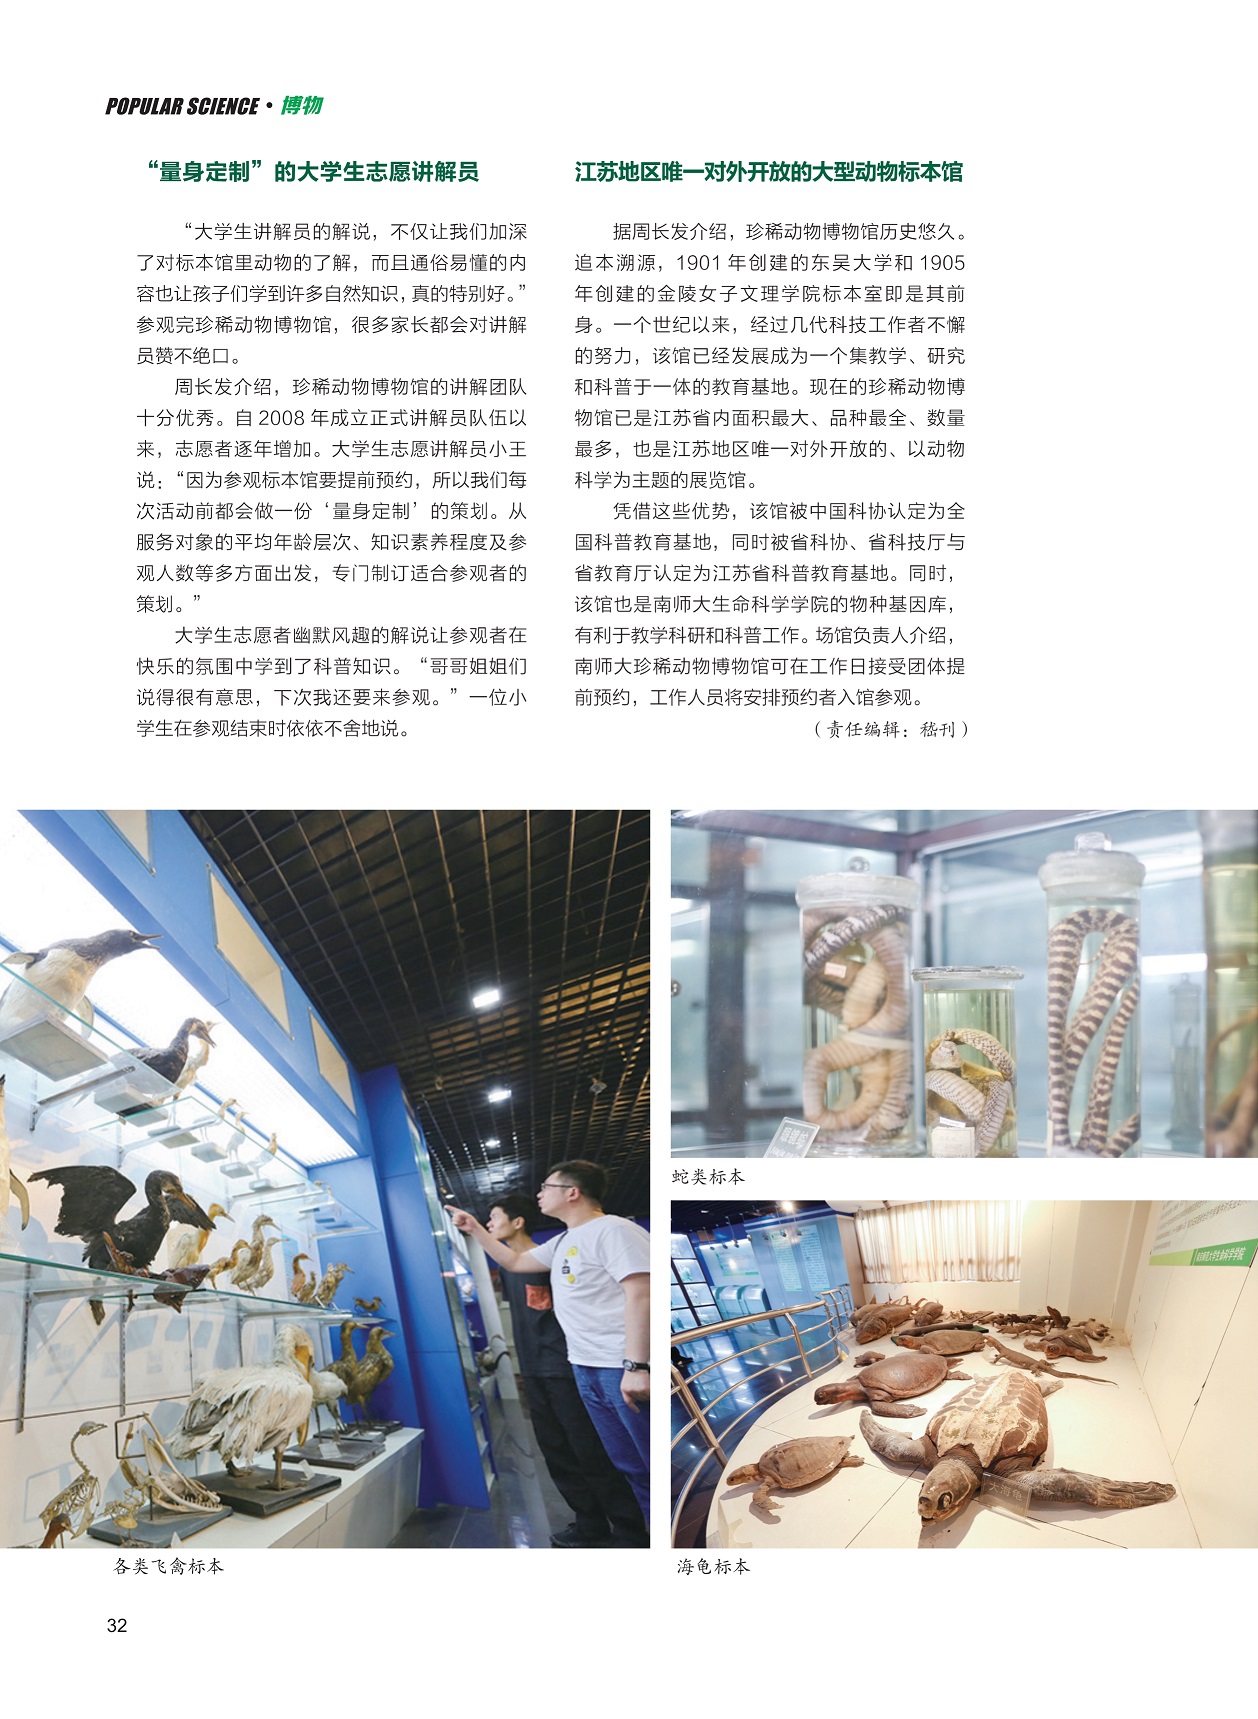 “量身定制”的大学生志愿讲解员,江苏地区唯一对外开放的大型动物标本馆